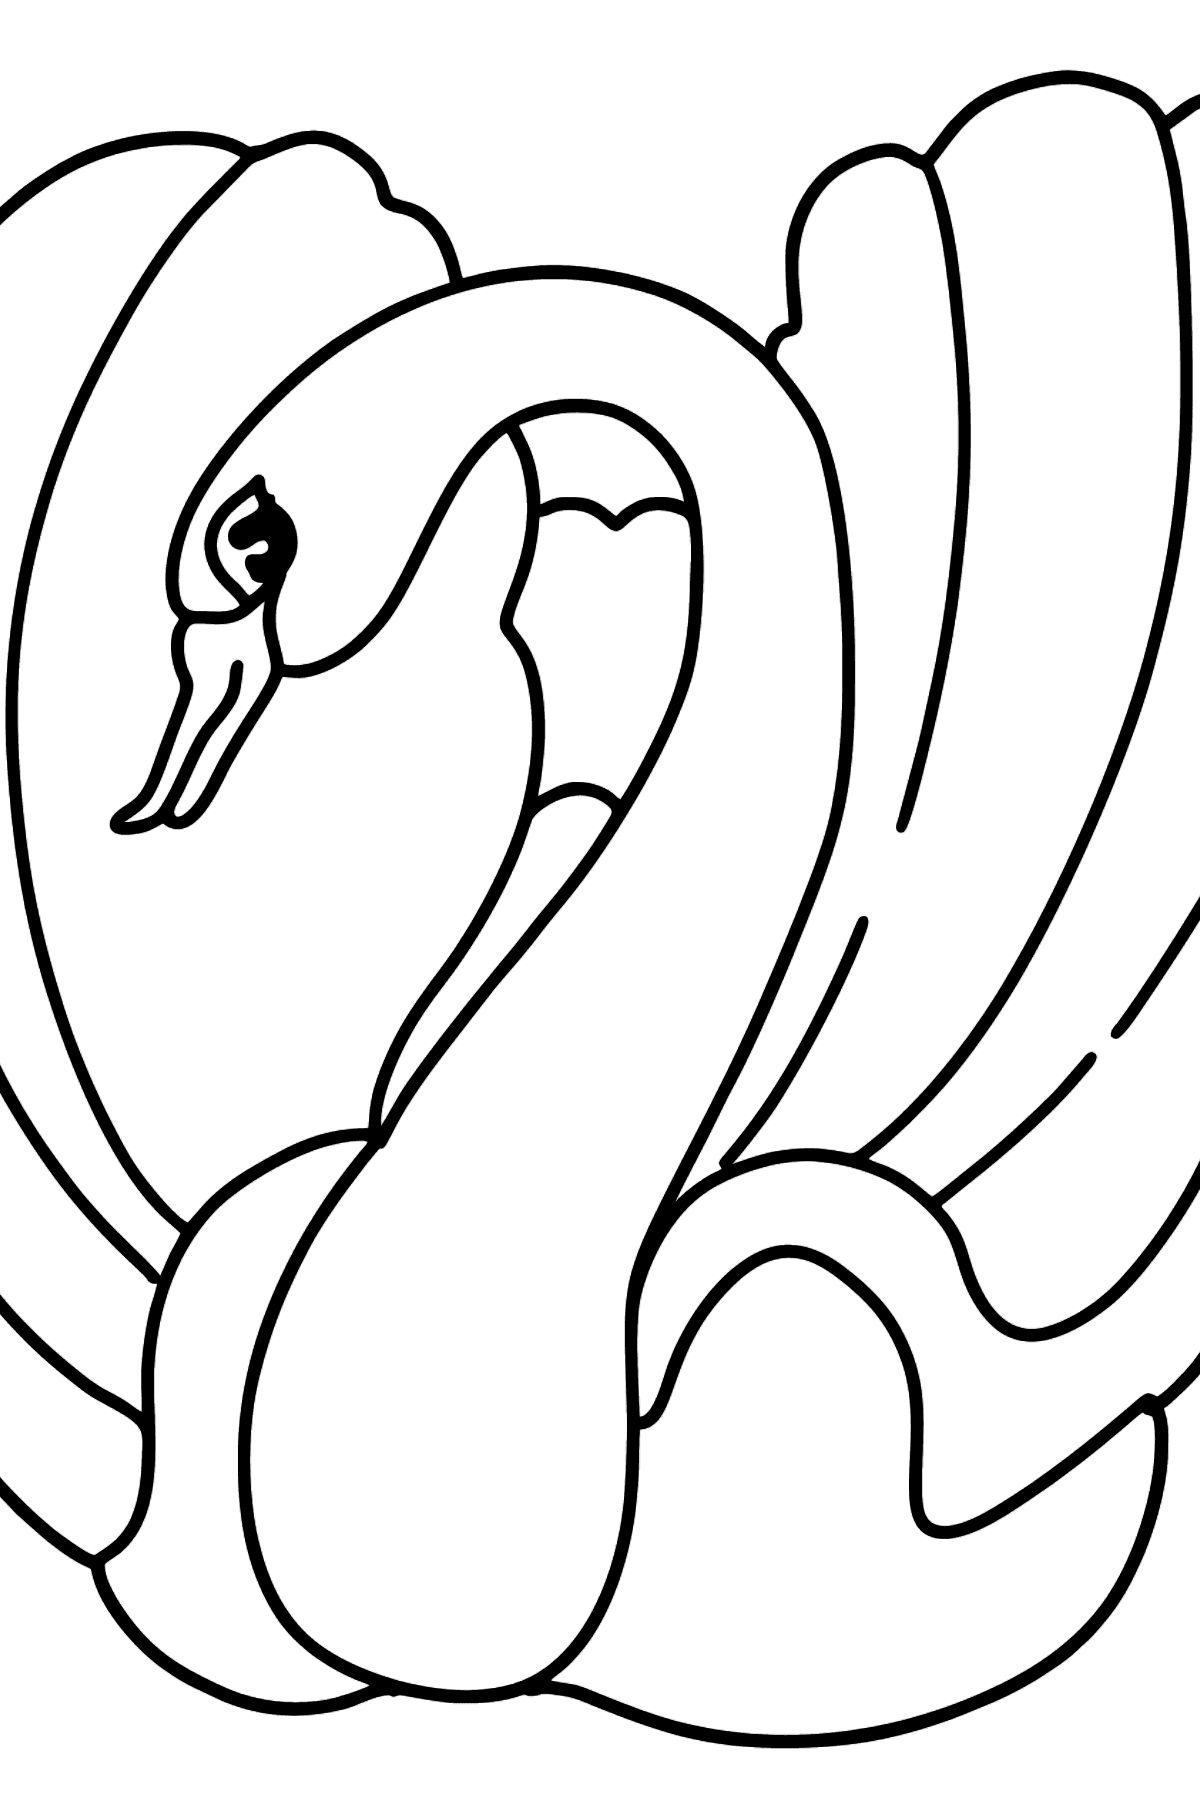 Desenho para colorir do Cisne Negro - Imagens para Colorir para Crianças